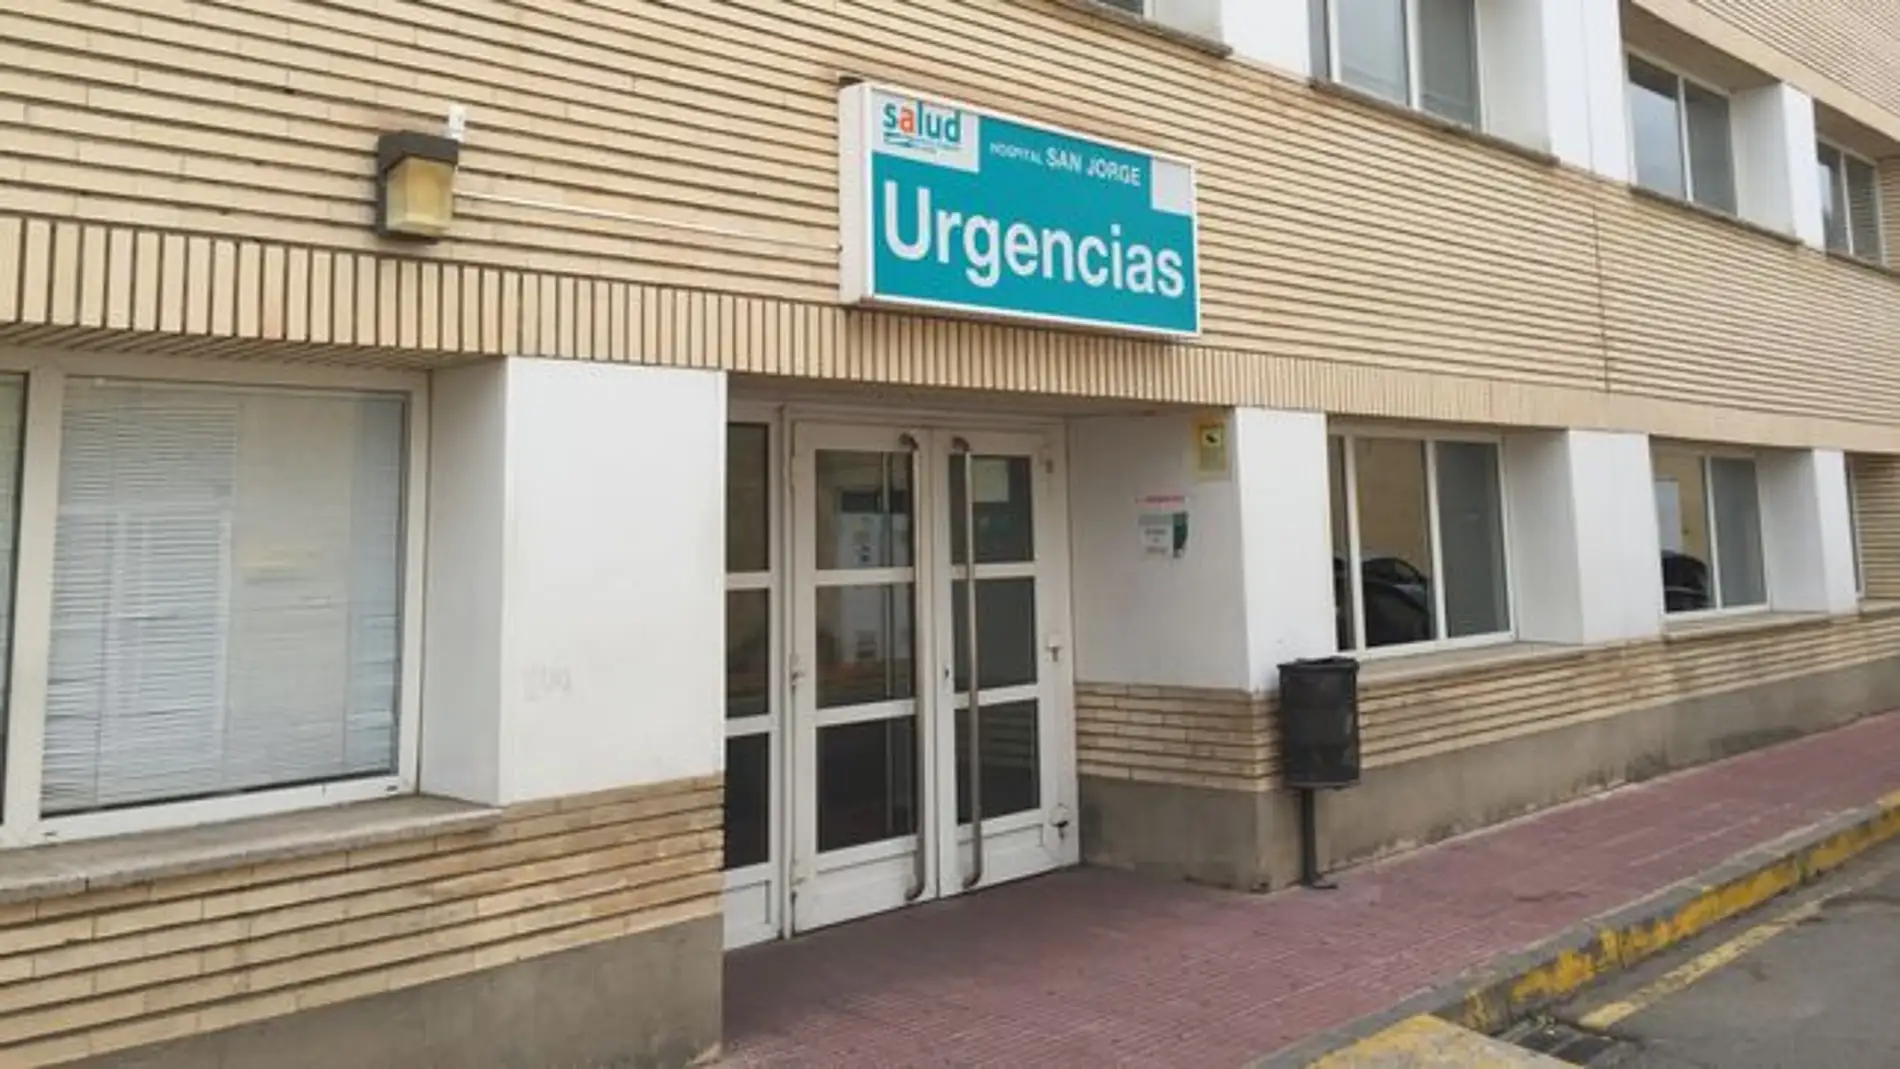 Satisfacción por la adjudicación de las nuevas urgencias del hospital San Jorge